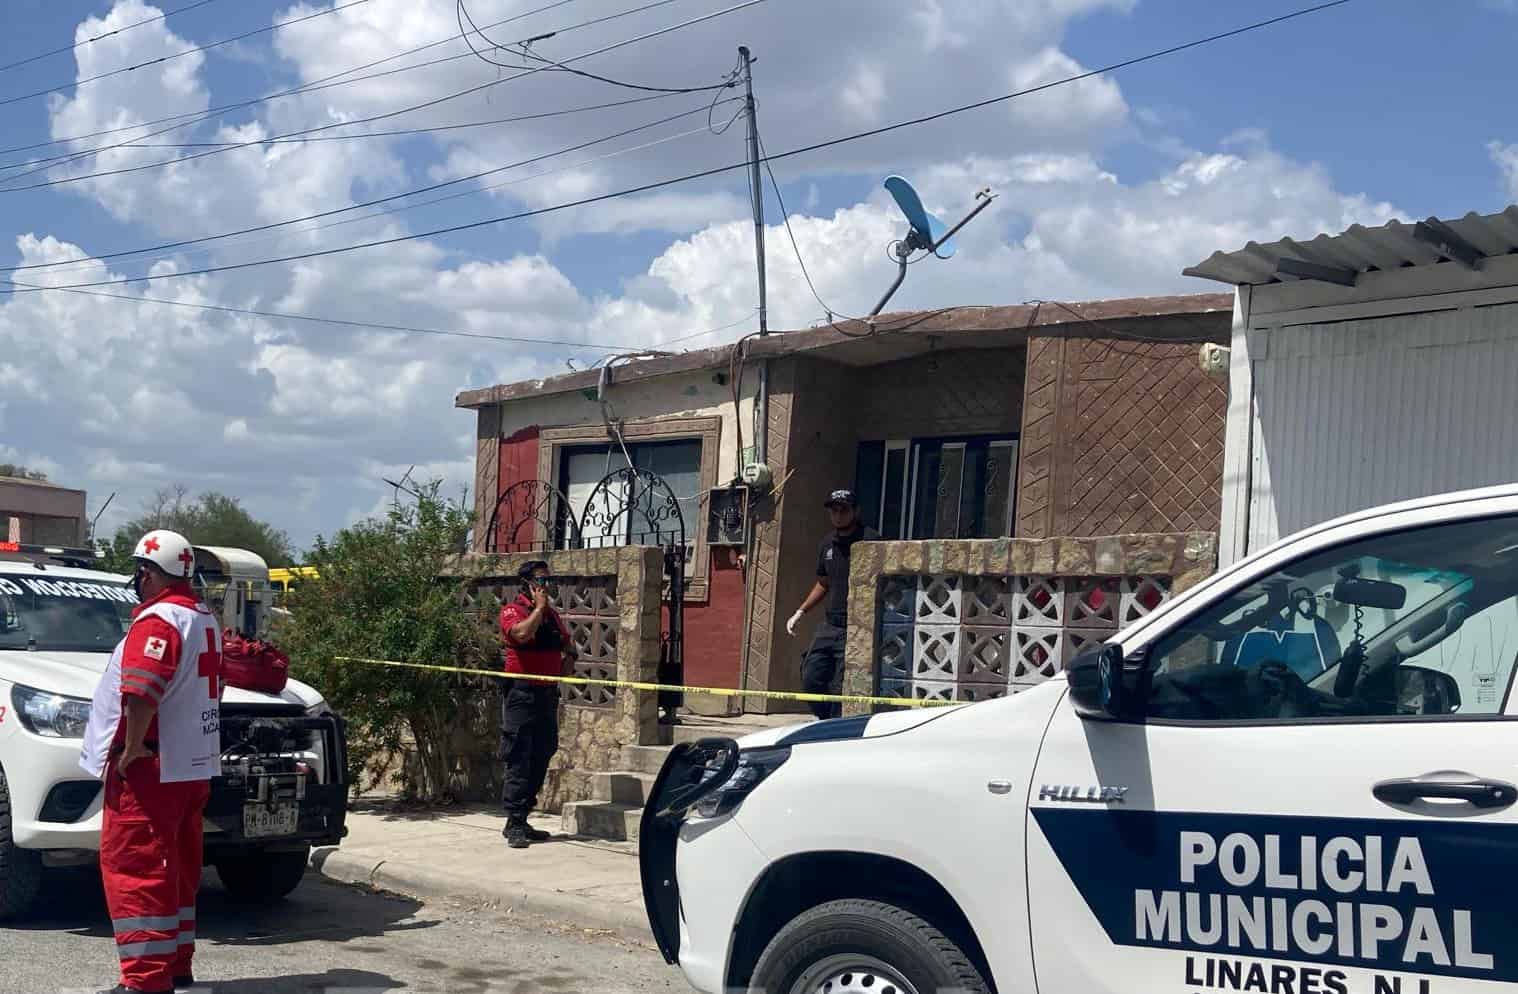 Hombres armados atacaron un punto de venta de droga en el municipio de Linares, dejando un saldo de una persona sin vida y daños en el domicilio